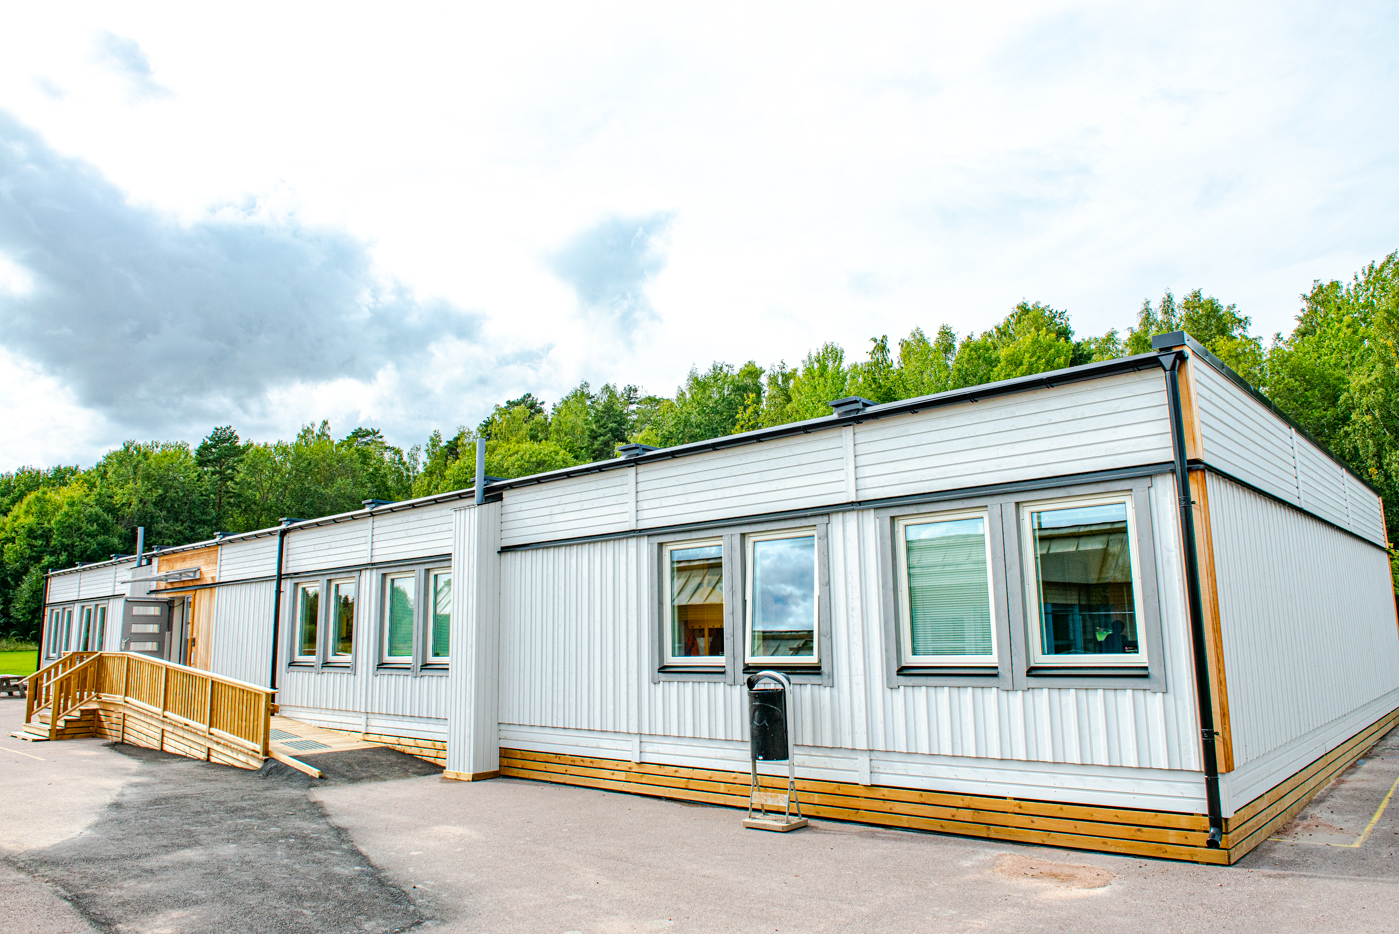 Sommaren 2019, medan barnen hade sommarlov, monterades tio stycken PCS Comfort skolmoduler på Håkanstorpsskolan, vilket resulterade i en ny skolpaviljong som rymmer tre nya klassrum och plats för 75 elever.